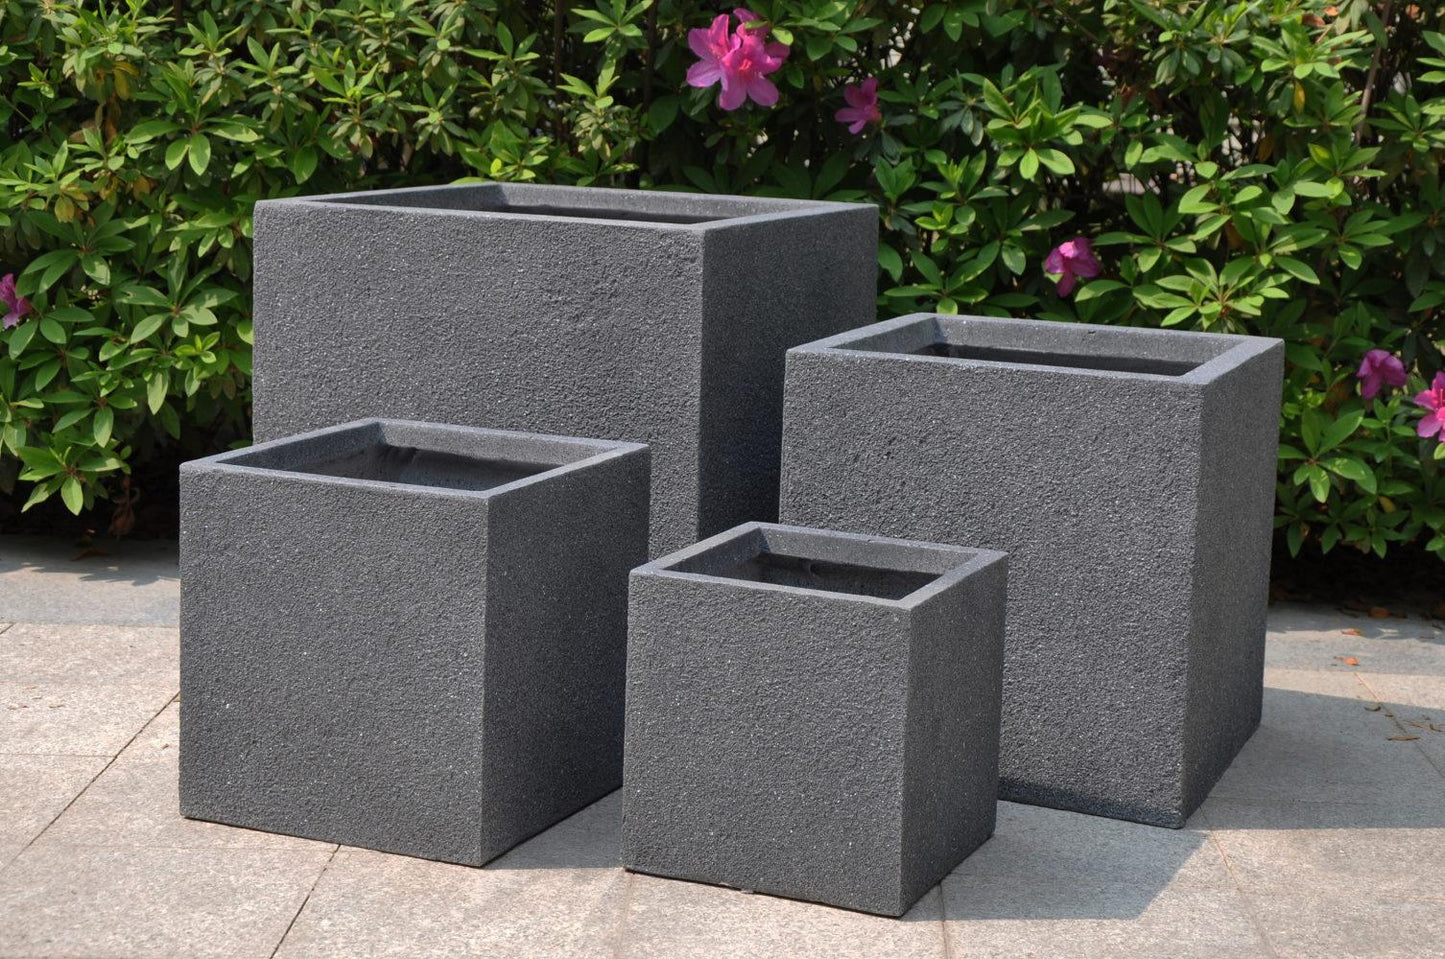 Textured Concrete Effect Square Grey Outdoor Planter by Idealist Lite W24.5 H25.5 L24.5 cm, 15.3L - citiplants.com